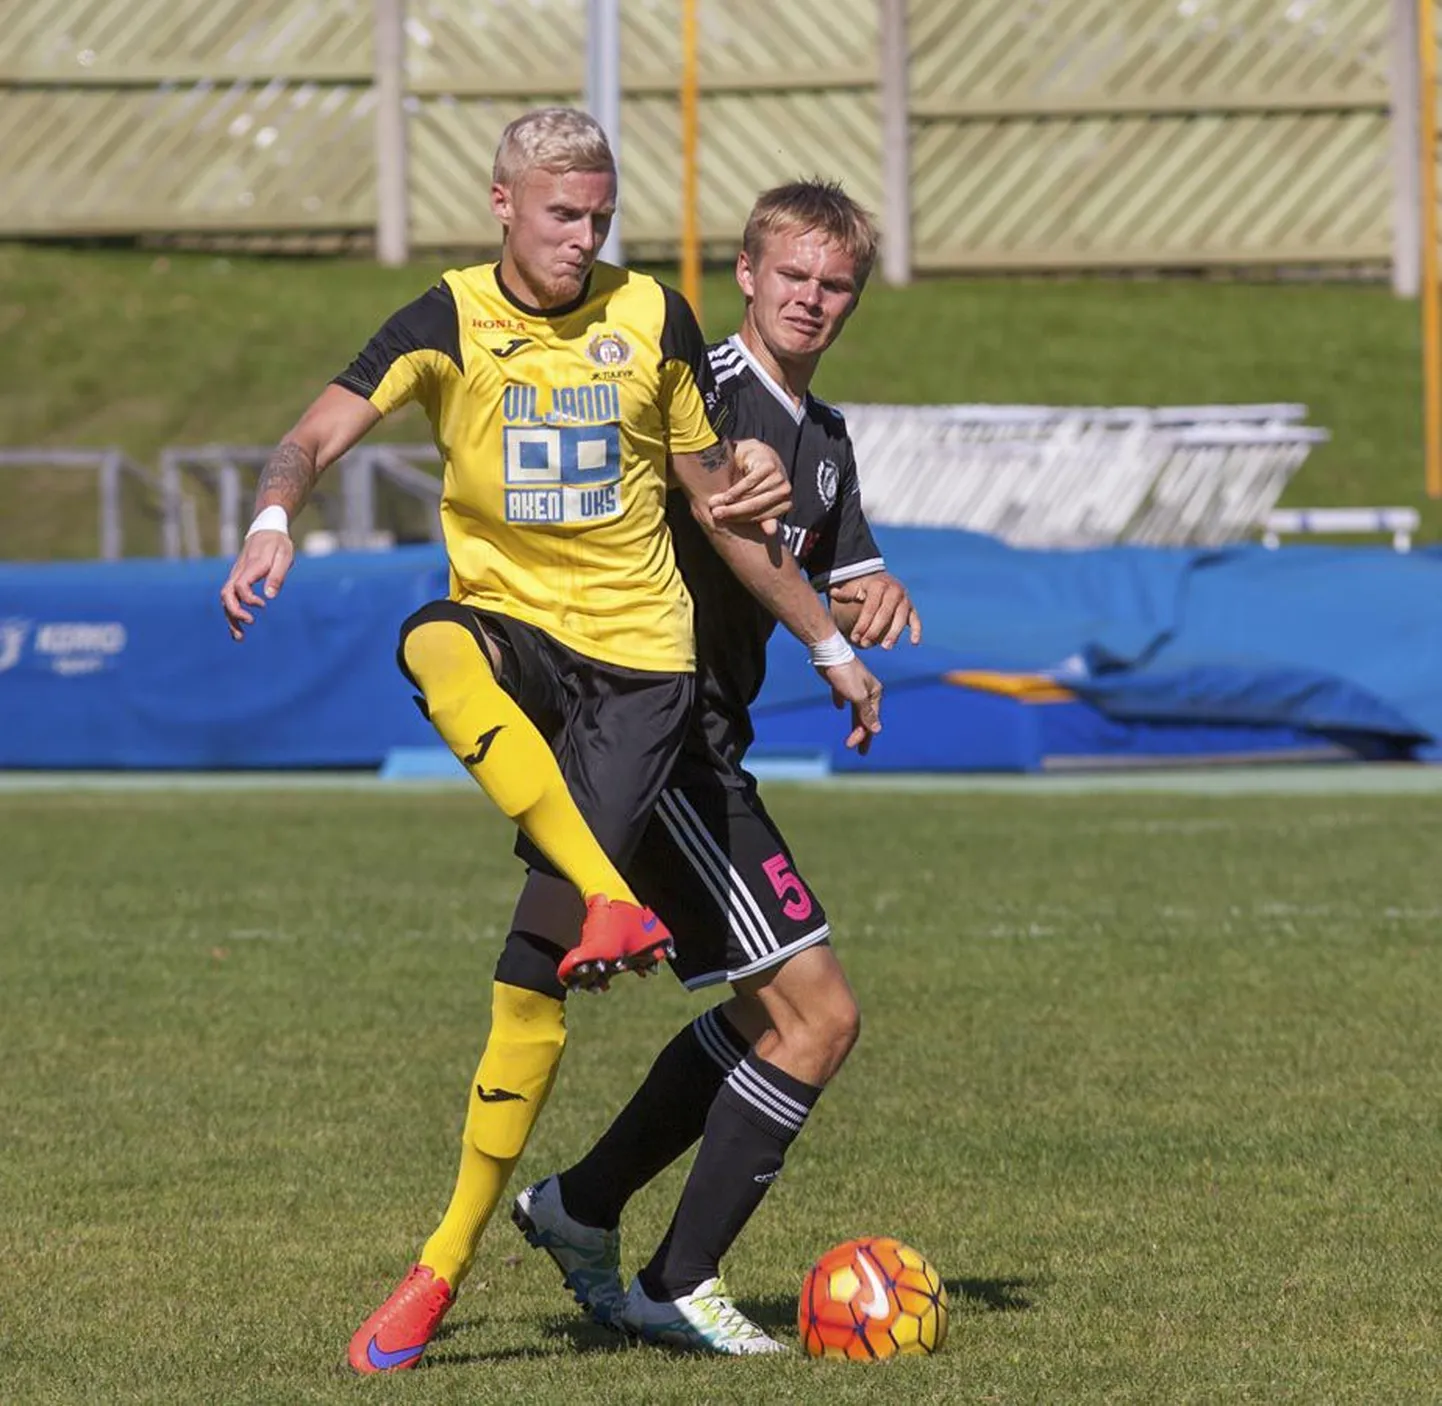 27-aastane Tuleviku klubi ründaja Kristen Kähr näitab sel nädalal oma võimeid ja oskusi Norra kolmanda divisjoni klubi juures.